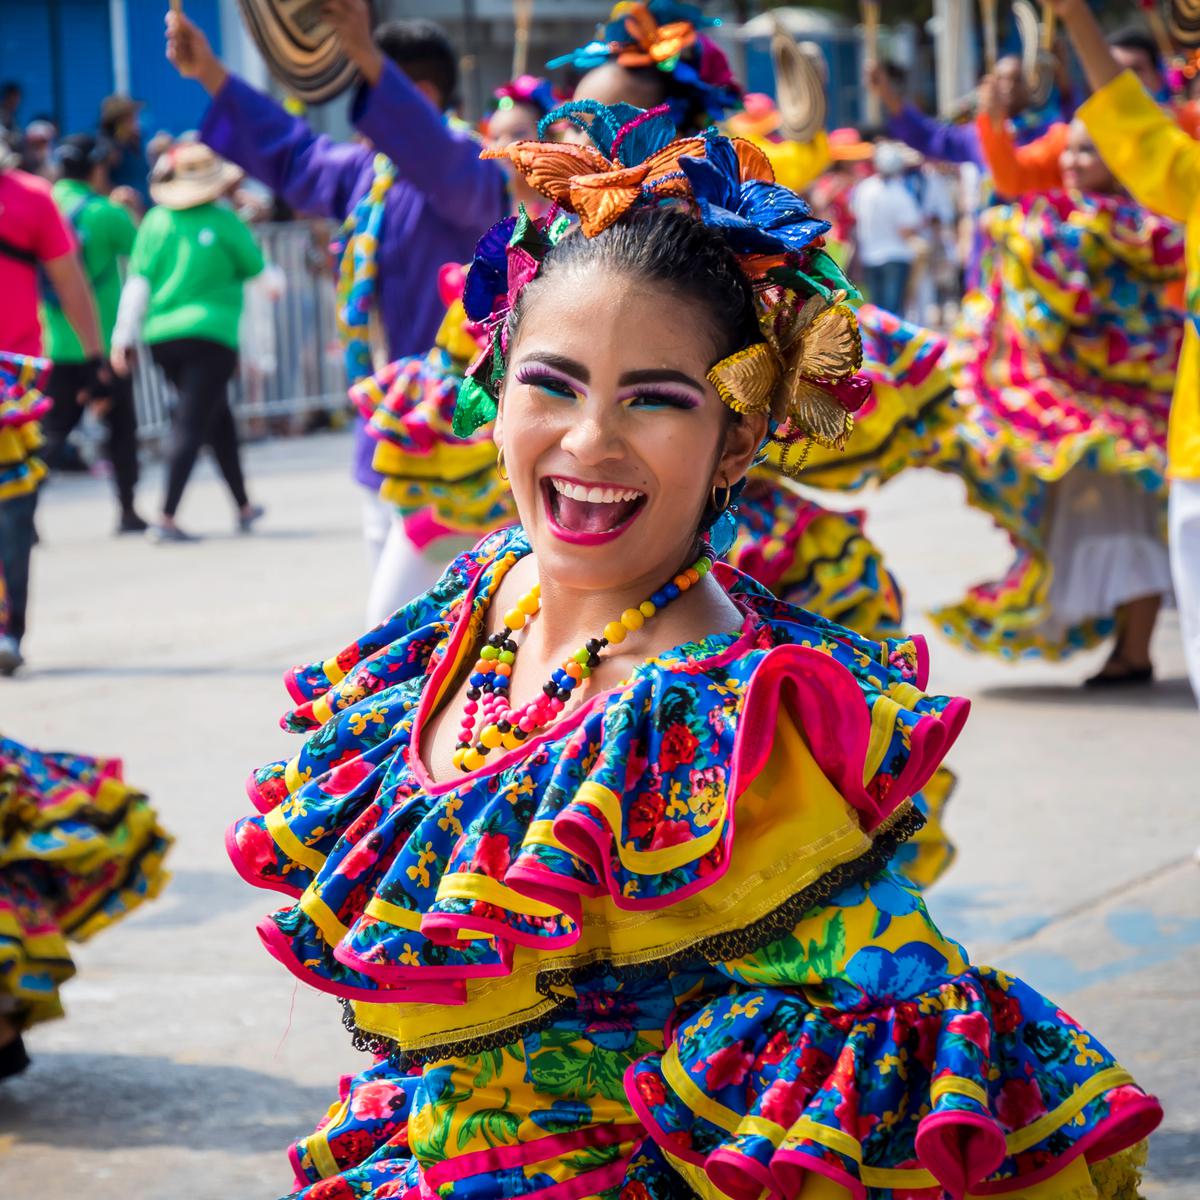 Colombia | Carnaval de Barranquilla 2022 se celebrará del 26 al 29 de marzo | turismo | Carnavales | VAMOS | EL COMERCIO PERÚ